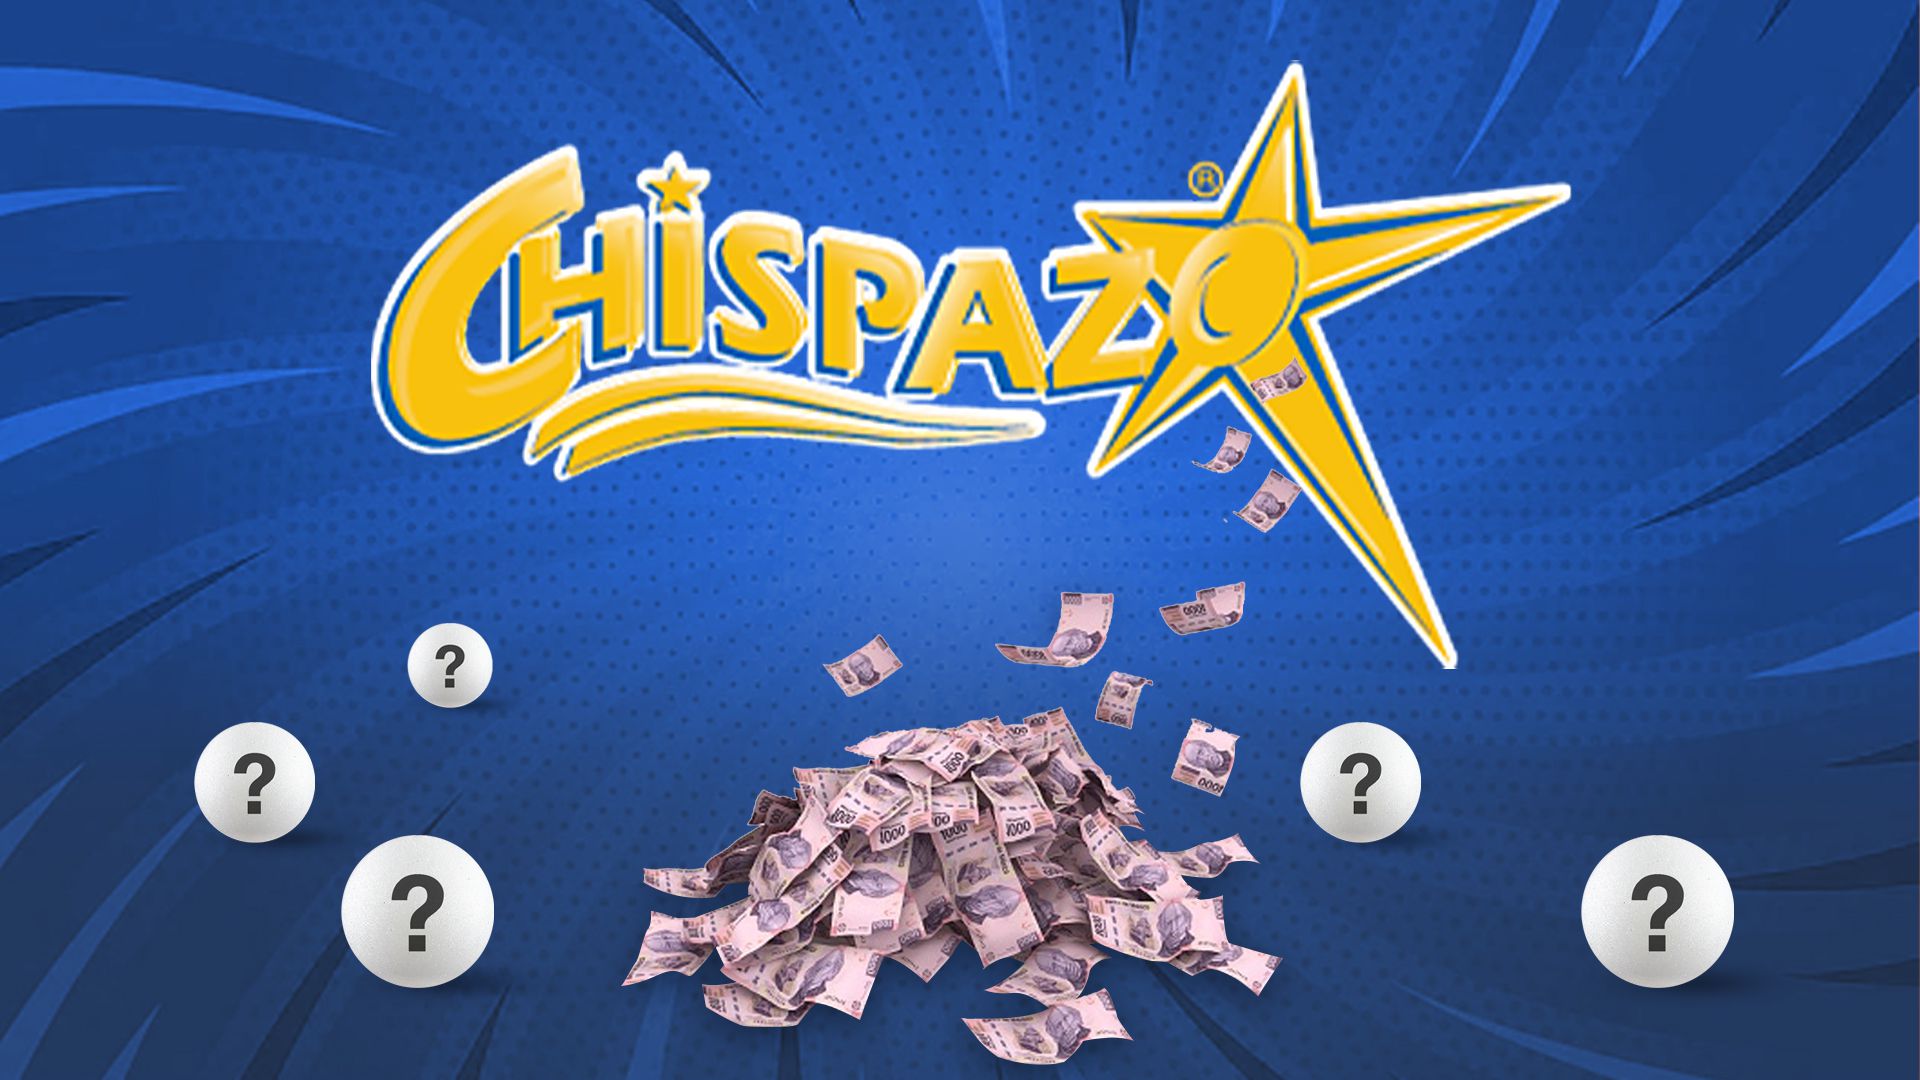 En el sorteo de hoy, Chipazo entregó $1,124,755.58 pesos (Infobae/Jovani Pérez)